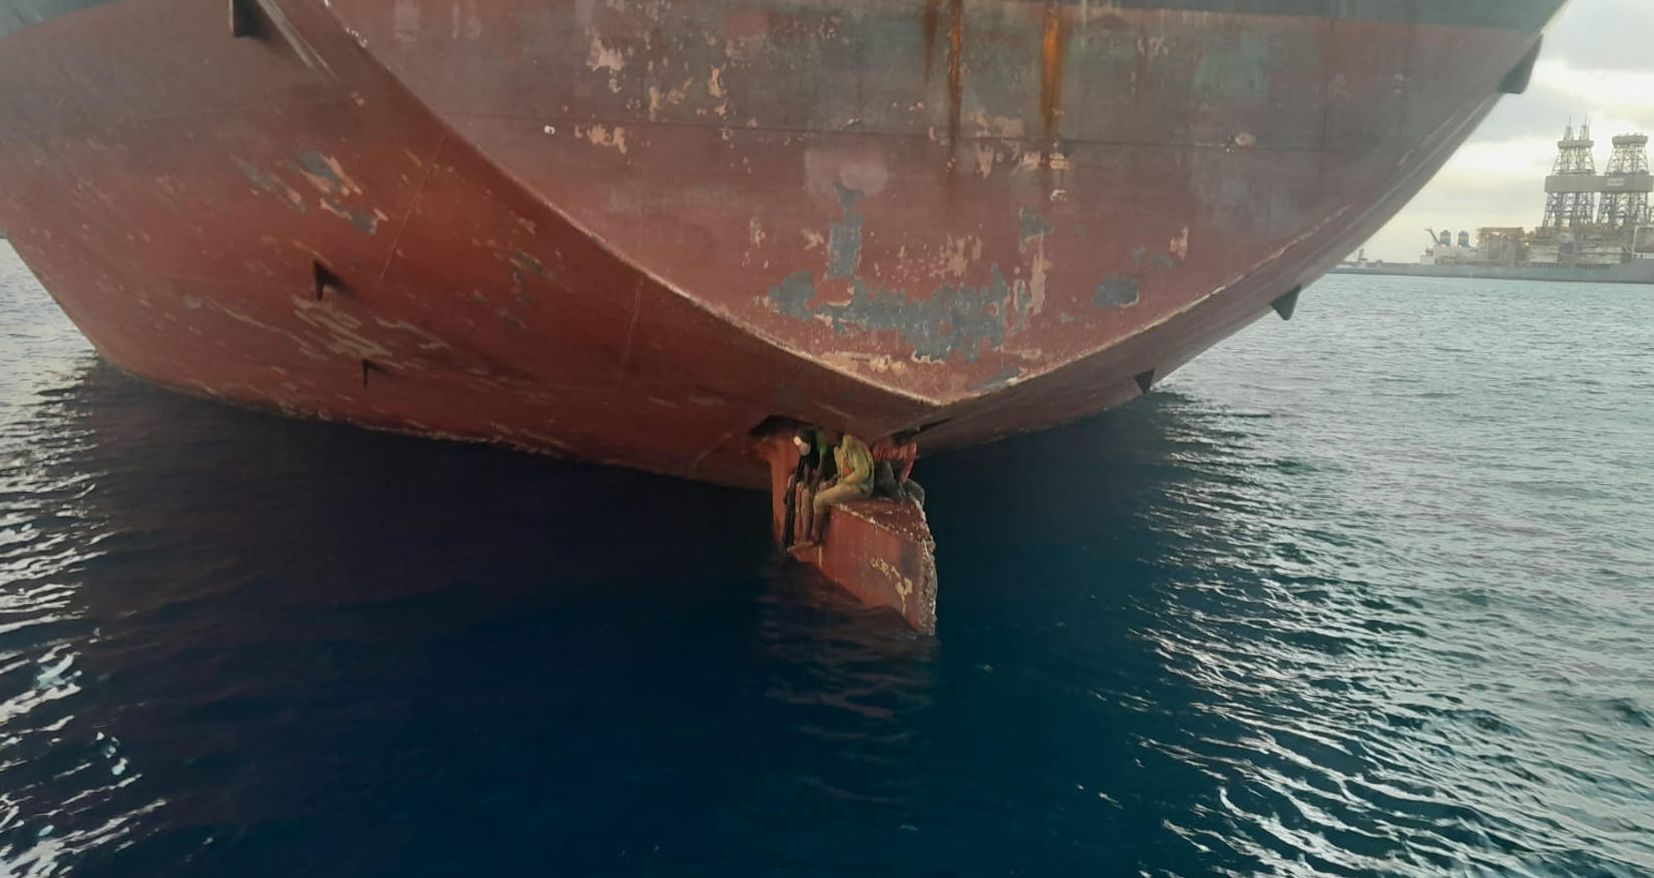 Imagen facilitada por Salvamento Marítimo de los tres varones localizados sobre el timón del petrolero Alithini II, buque con bandera de Malta